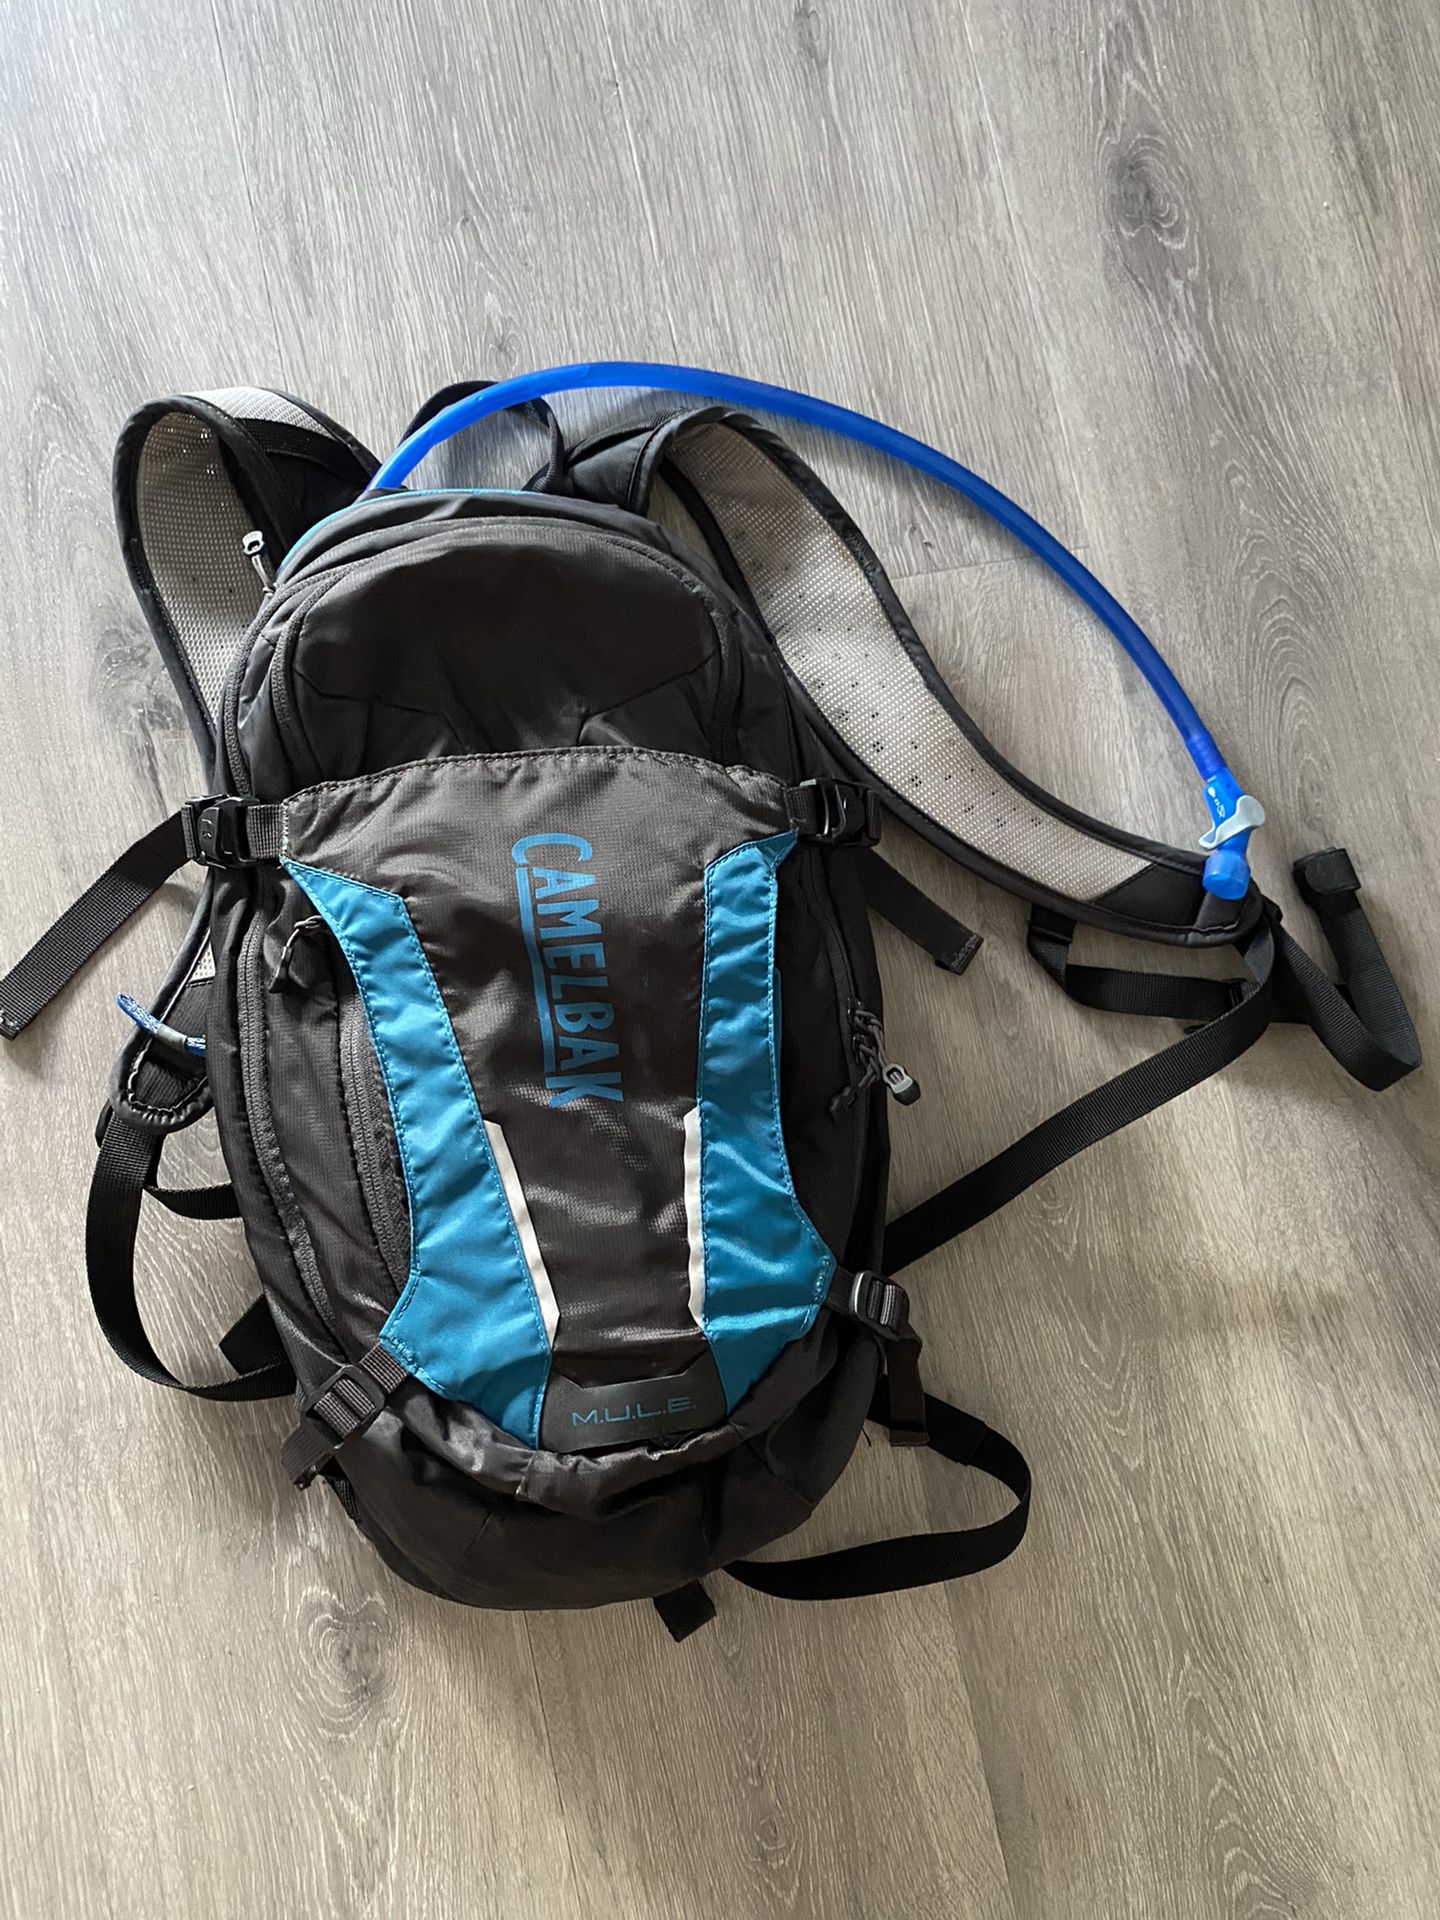 Camelbak HAWG 100oz backpack